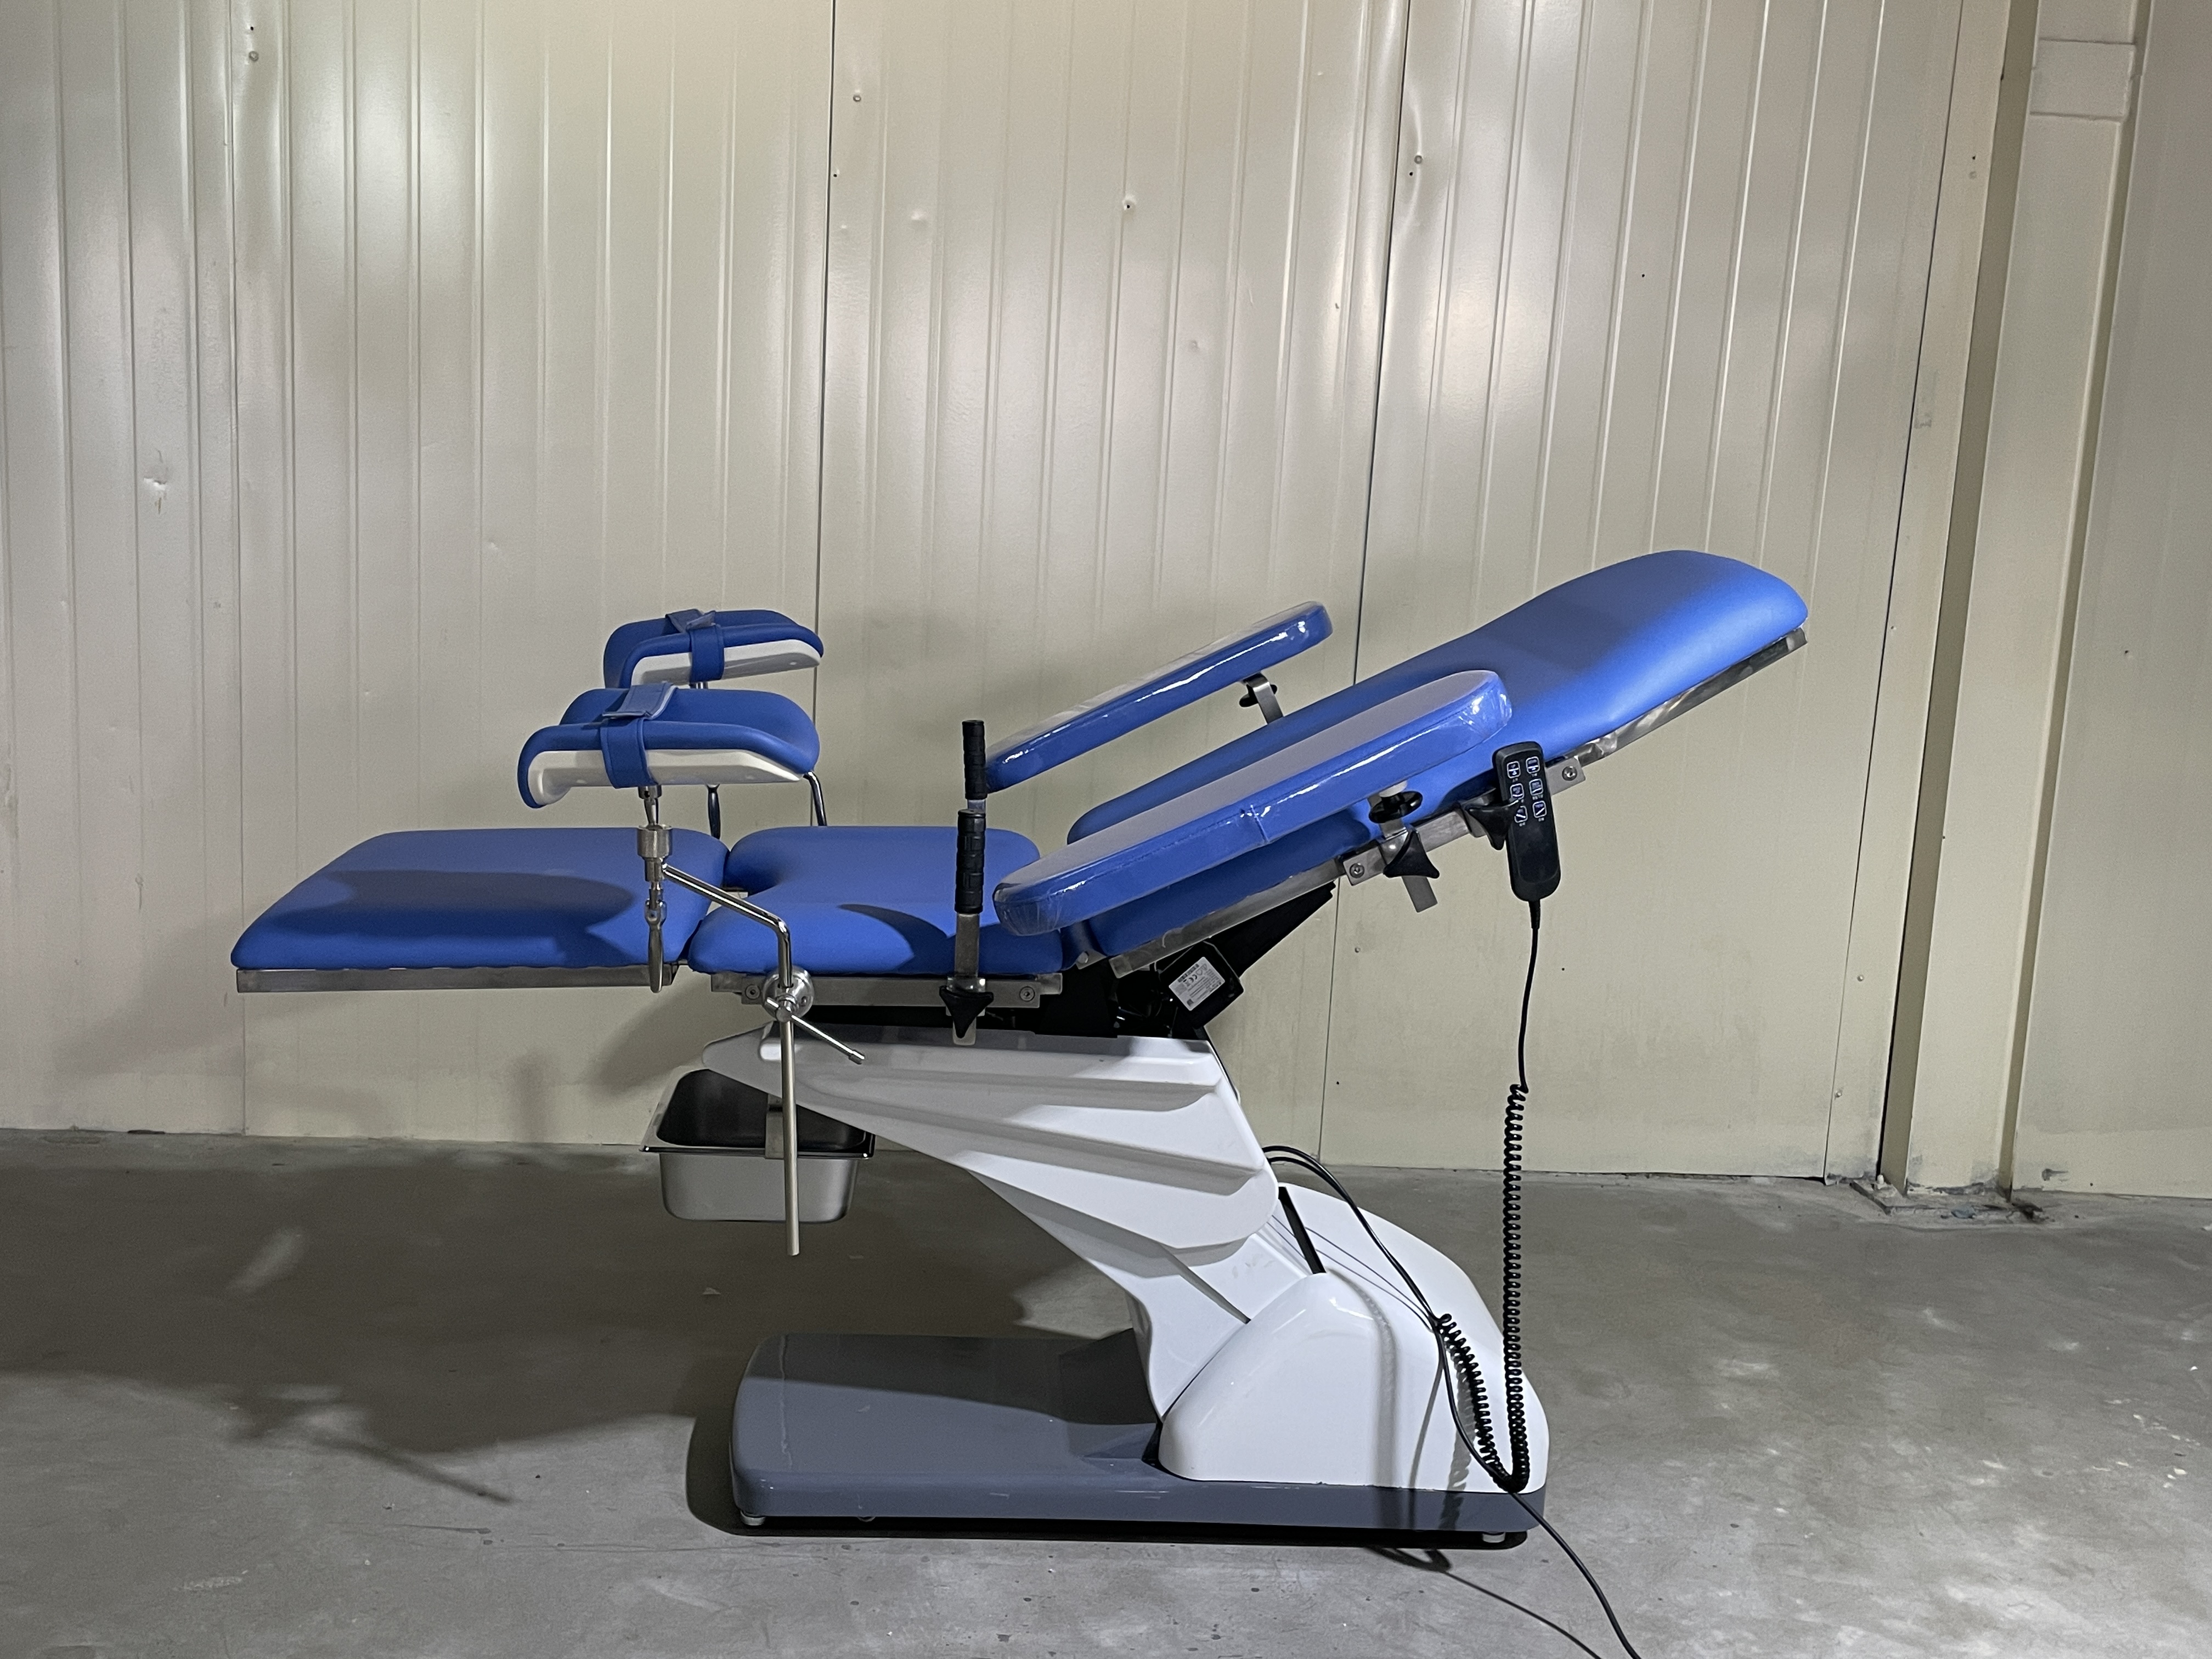 Table de lit luxueuse pour salle d'accouchement, examen obstétrical électrique de gynécologie à trois fonctions